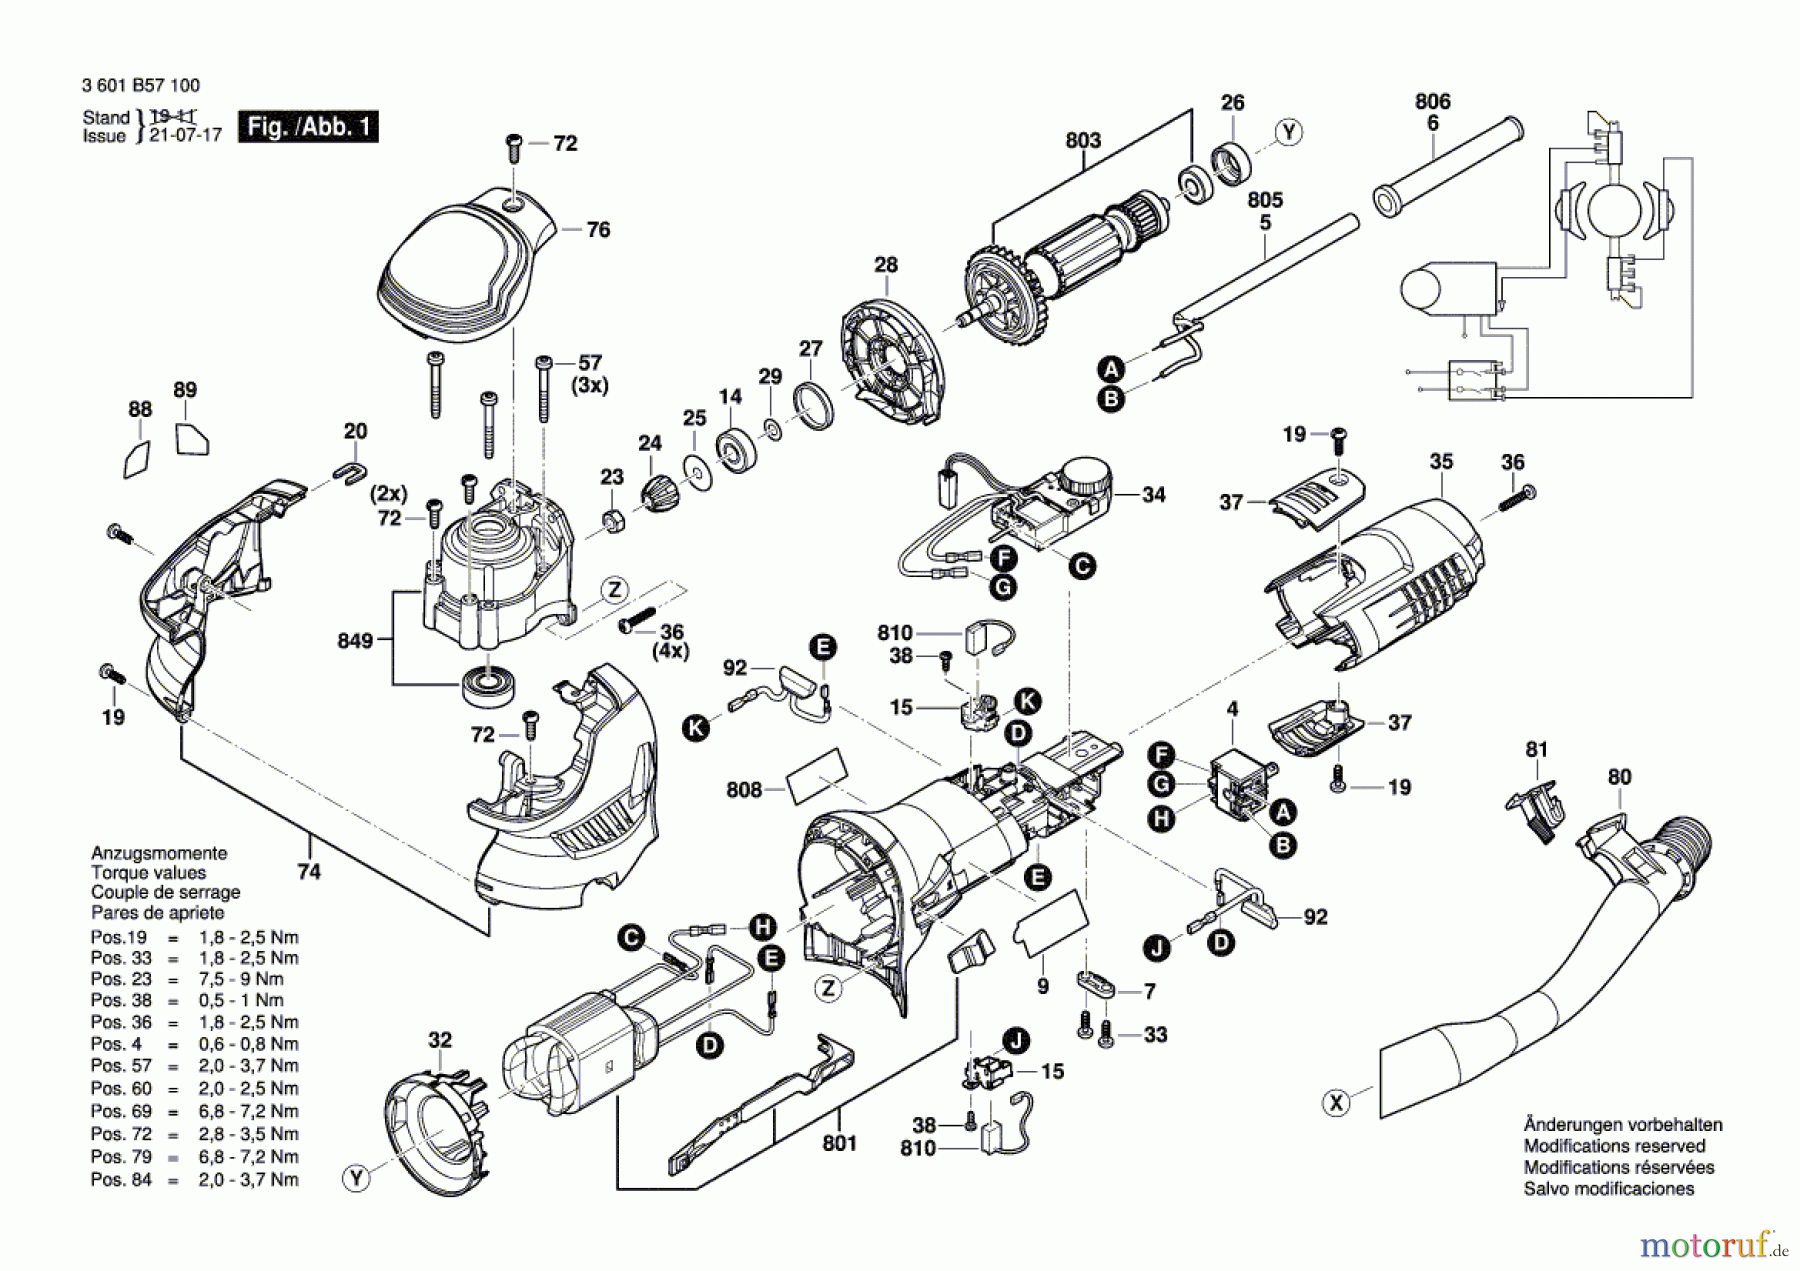  Bosch Werkzeug Exzenterschleifer GET 75-150 Seite 1